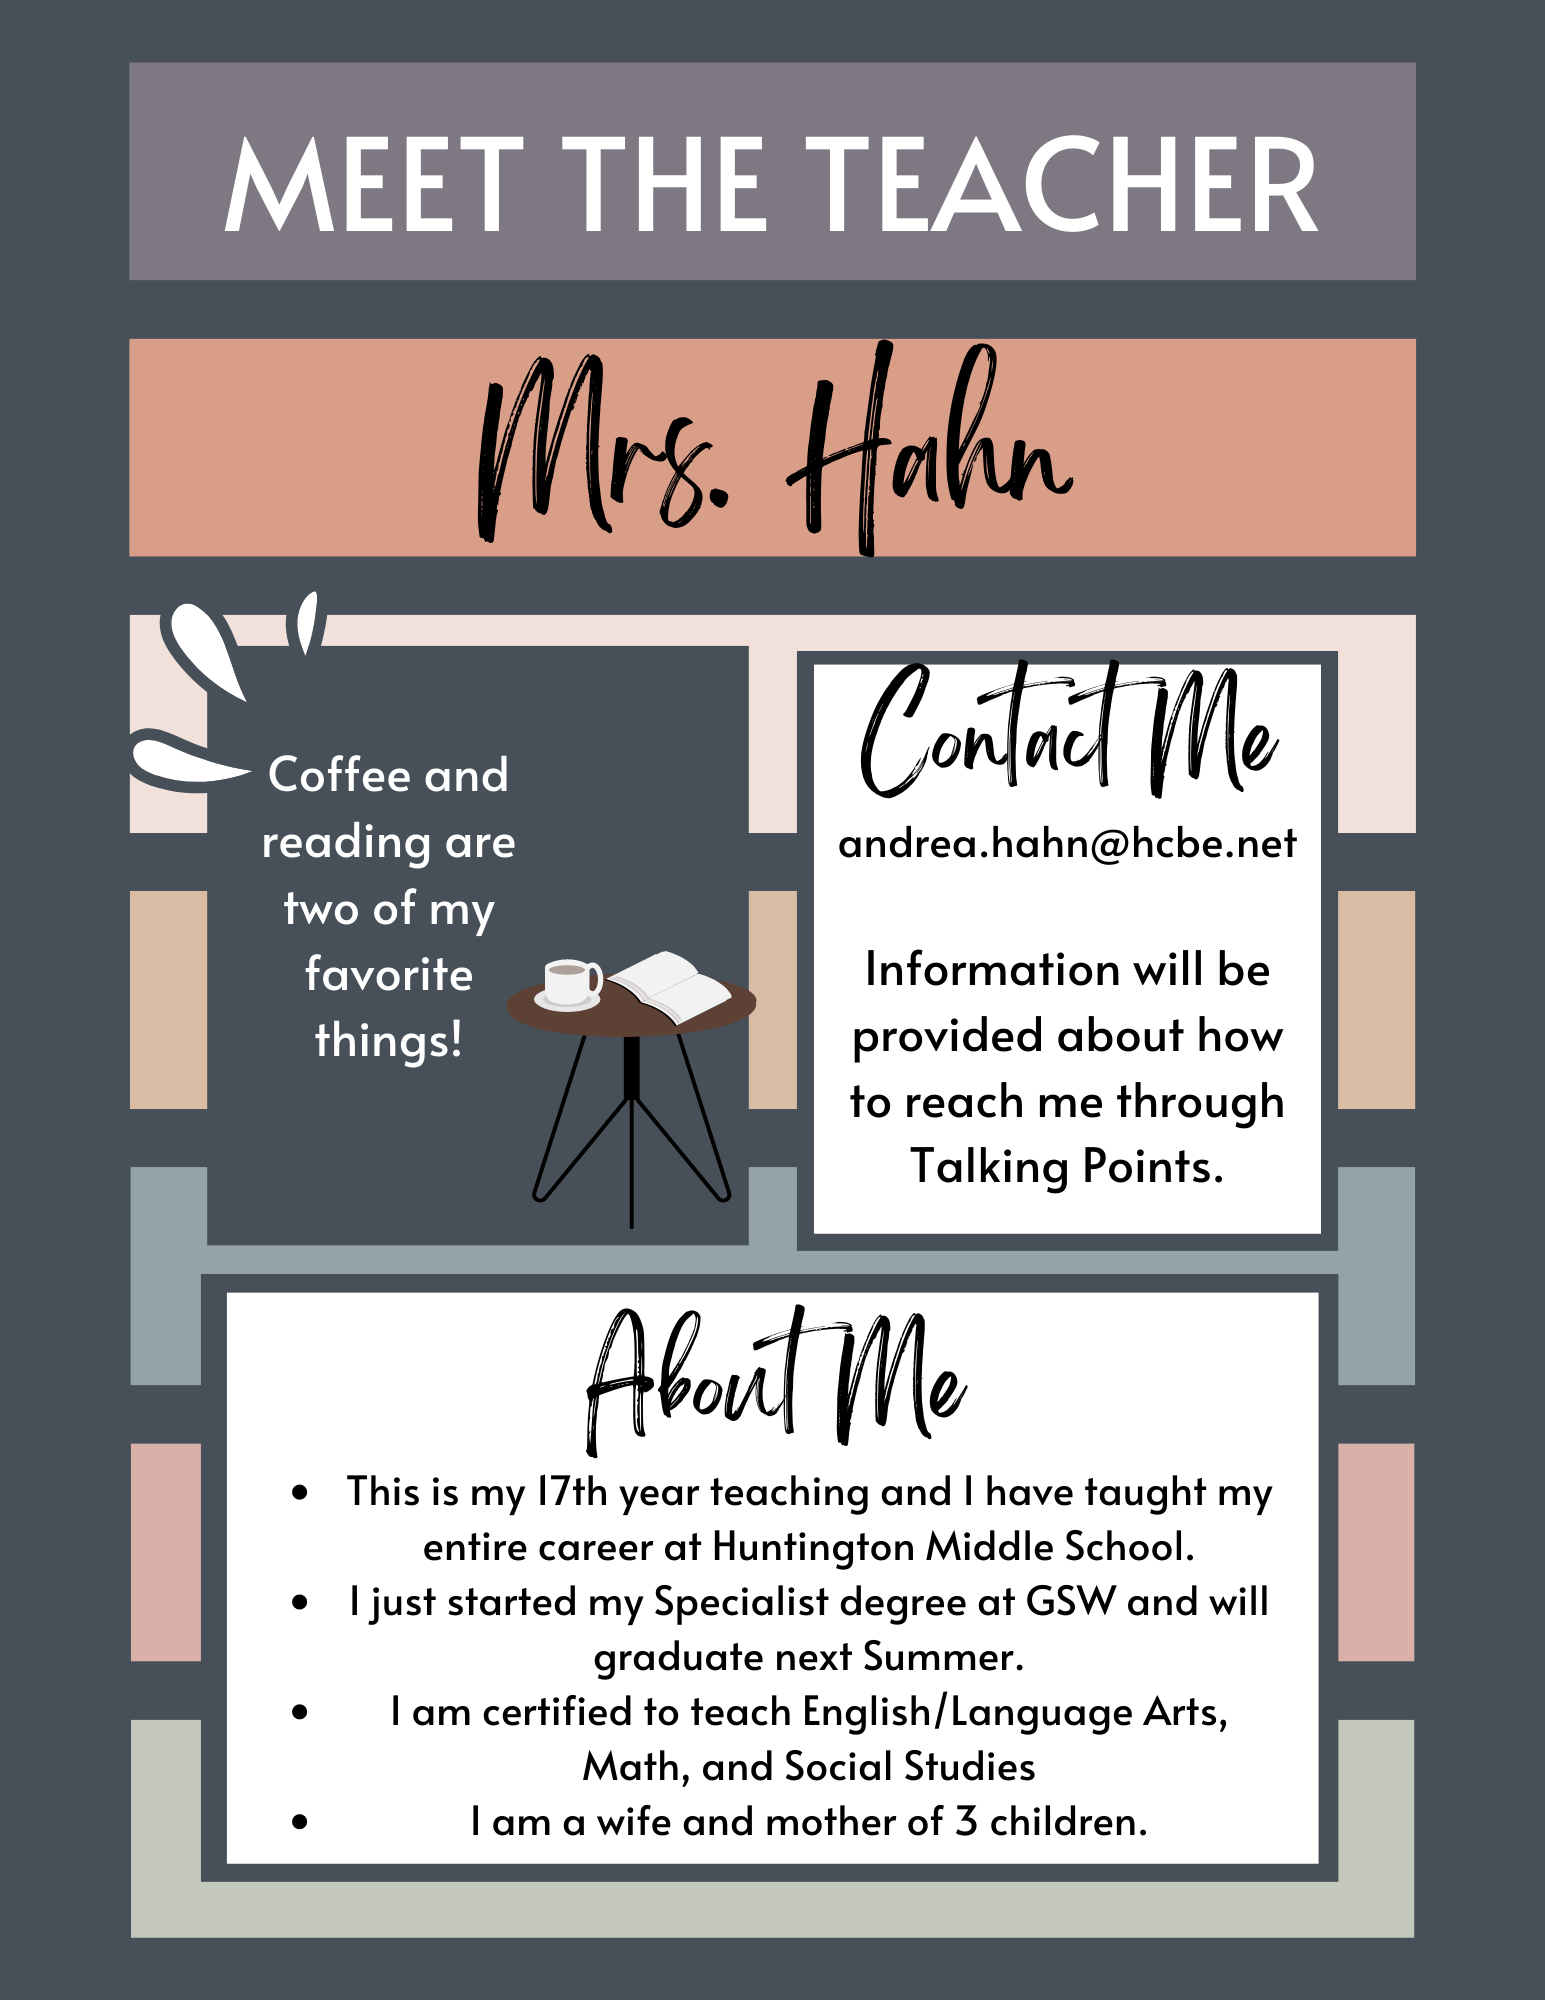 Meet the Teacher - Mrs. Hahn